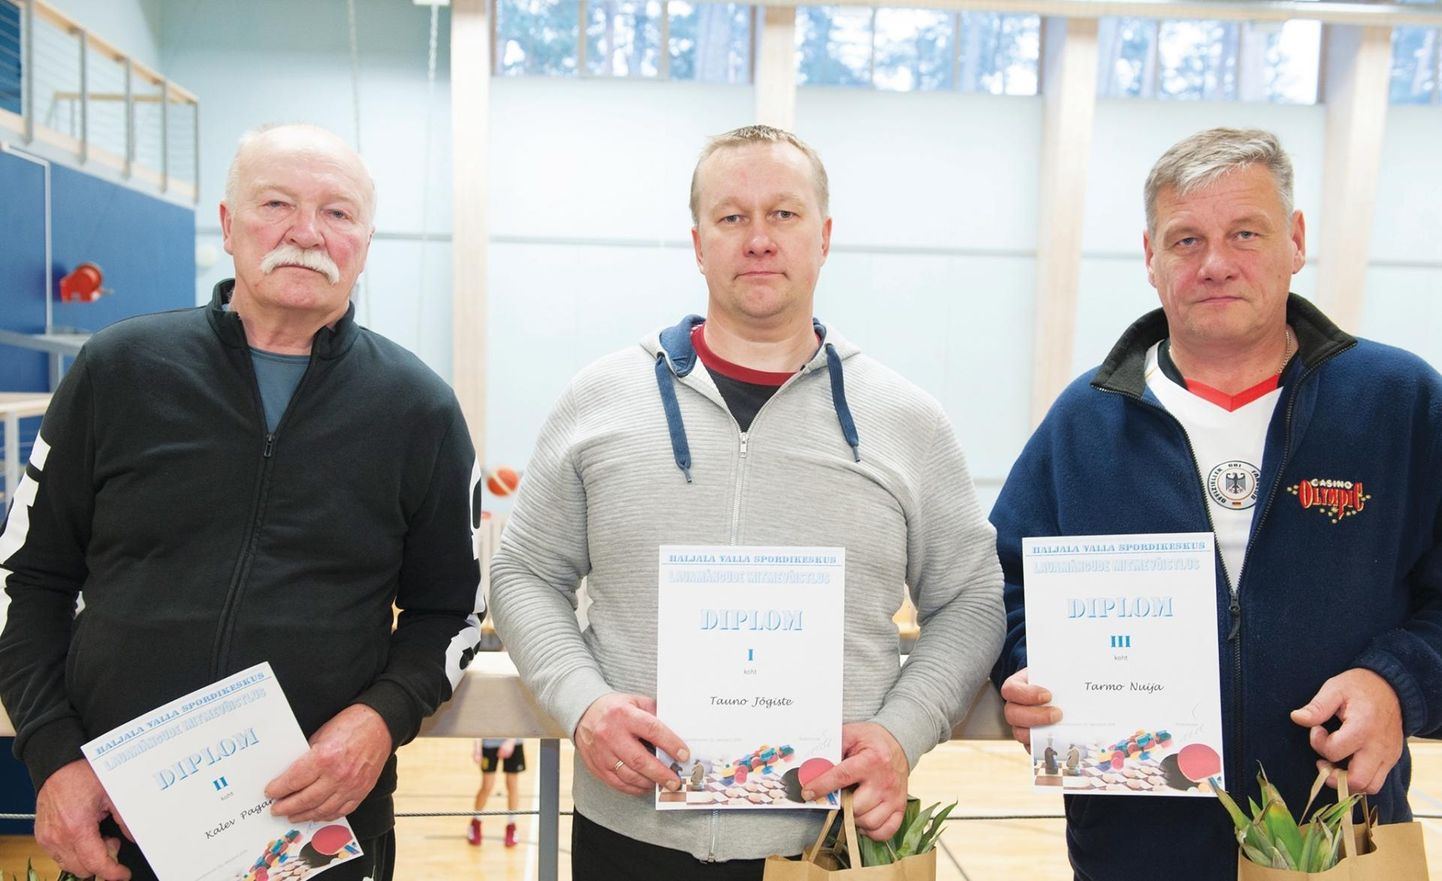 Võsu lauamängude mitmevõistlustel tegid tegusid teiseks tulnud Kalev Pagar (vasakult), võitja Tauno Jõgiste ning kolmanda koha omanik Tarmo Nuija.